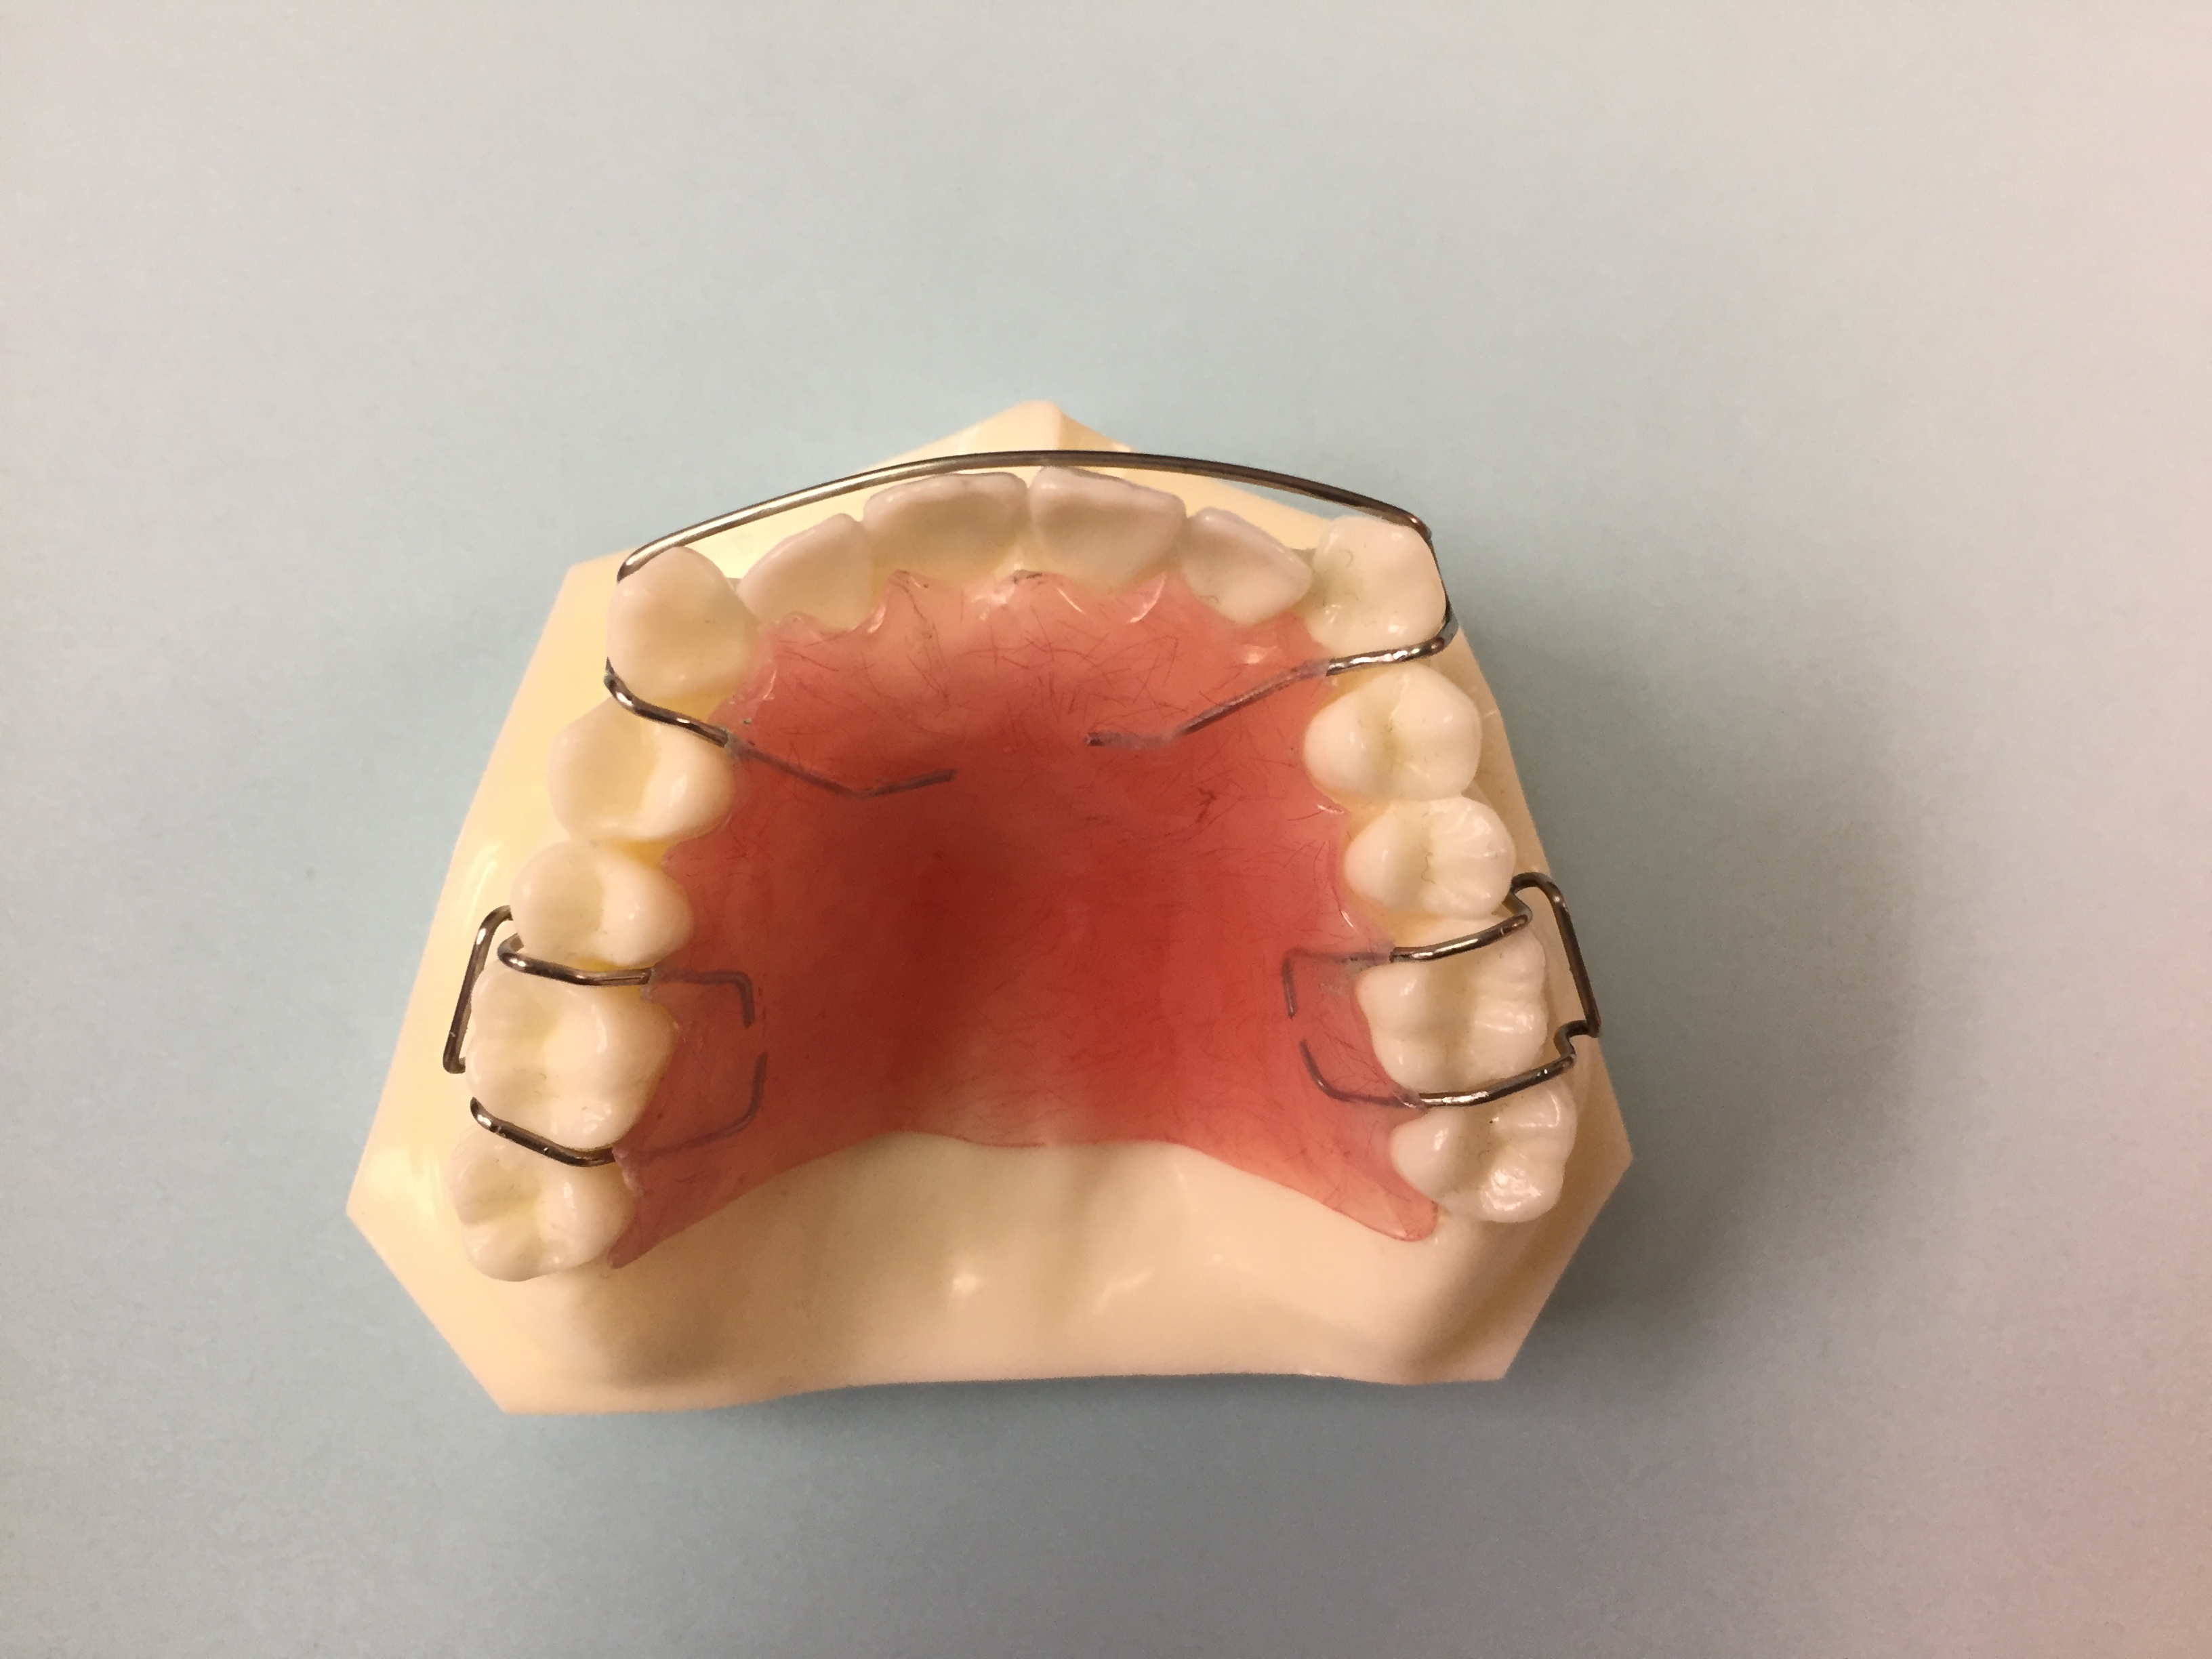 Hawley Orthodontic Retainer